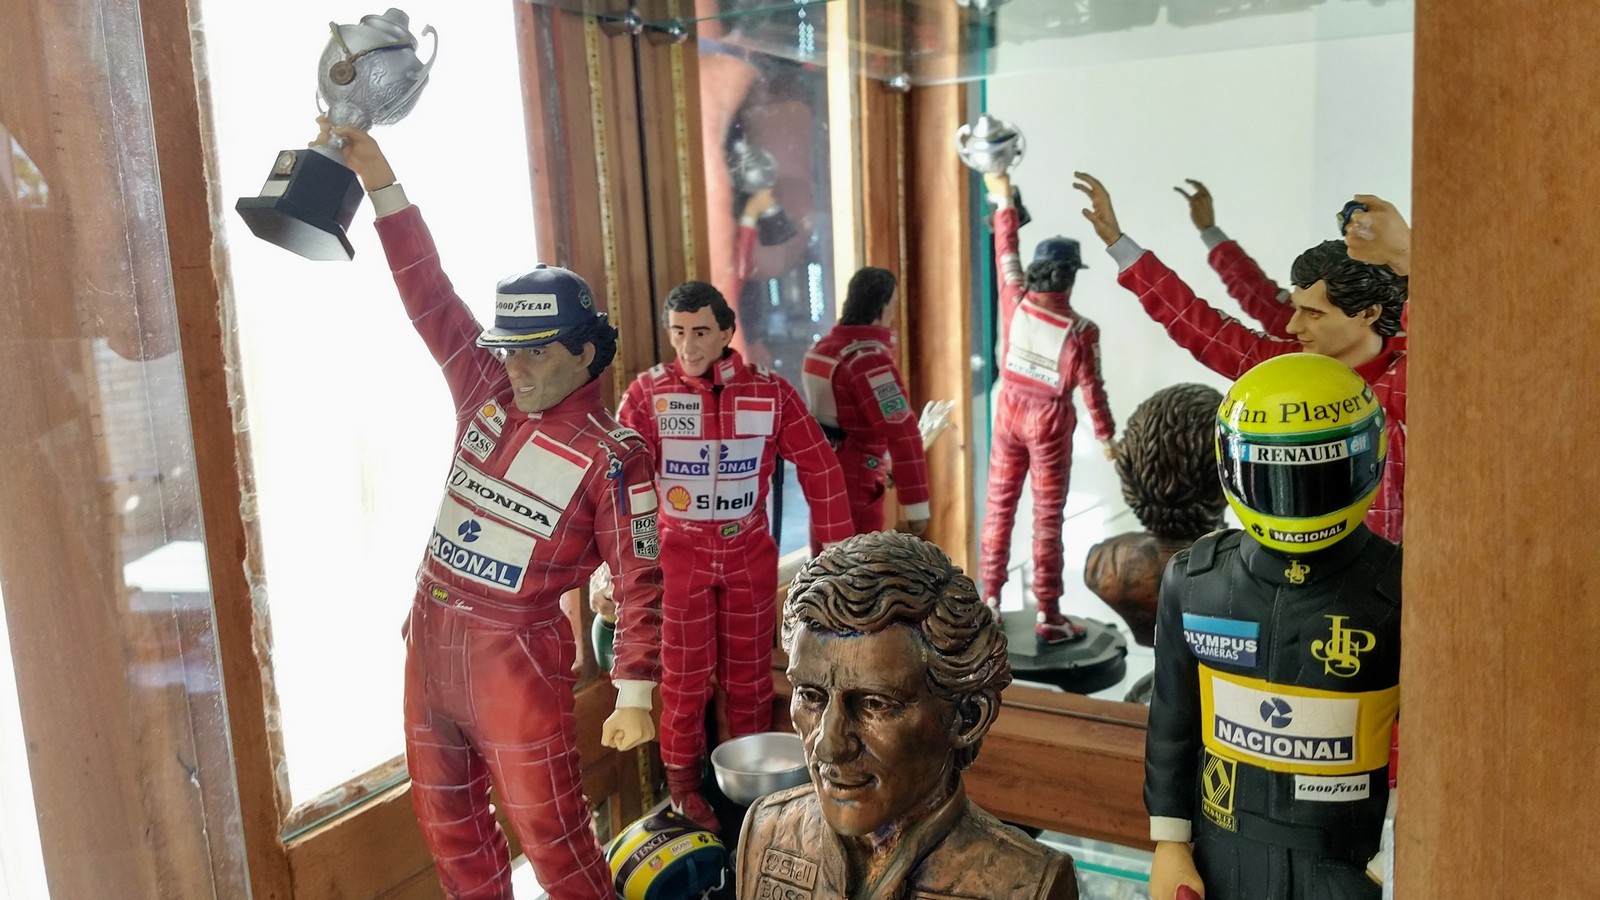 Coleção de miniaturas de Fórmula 1 — Foto: Lucca Mendonça